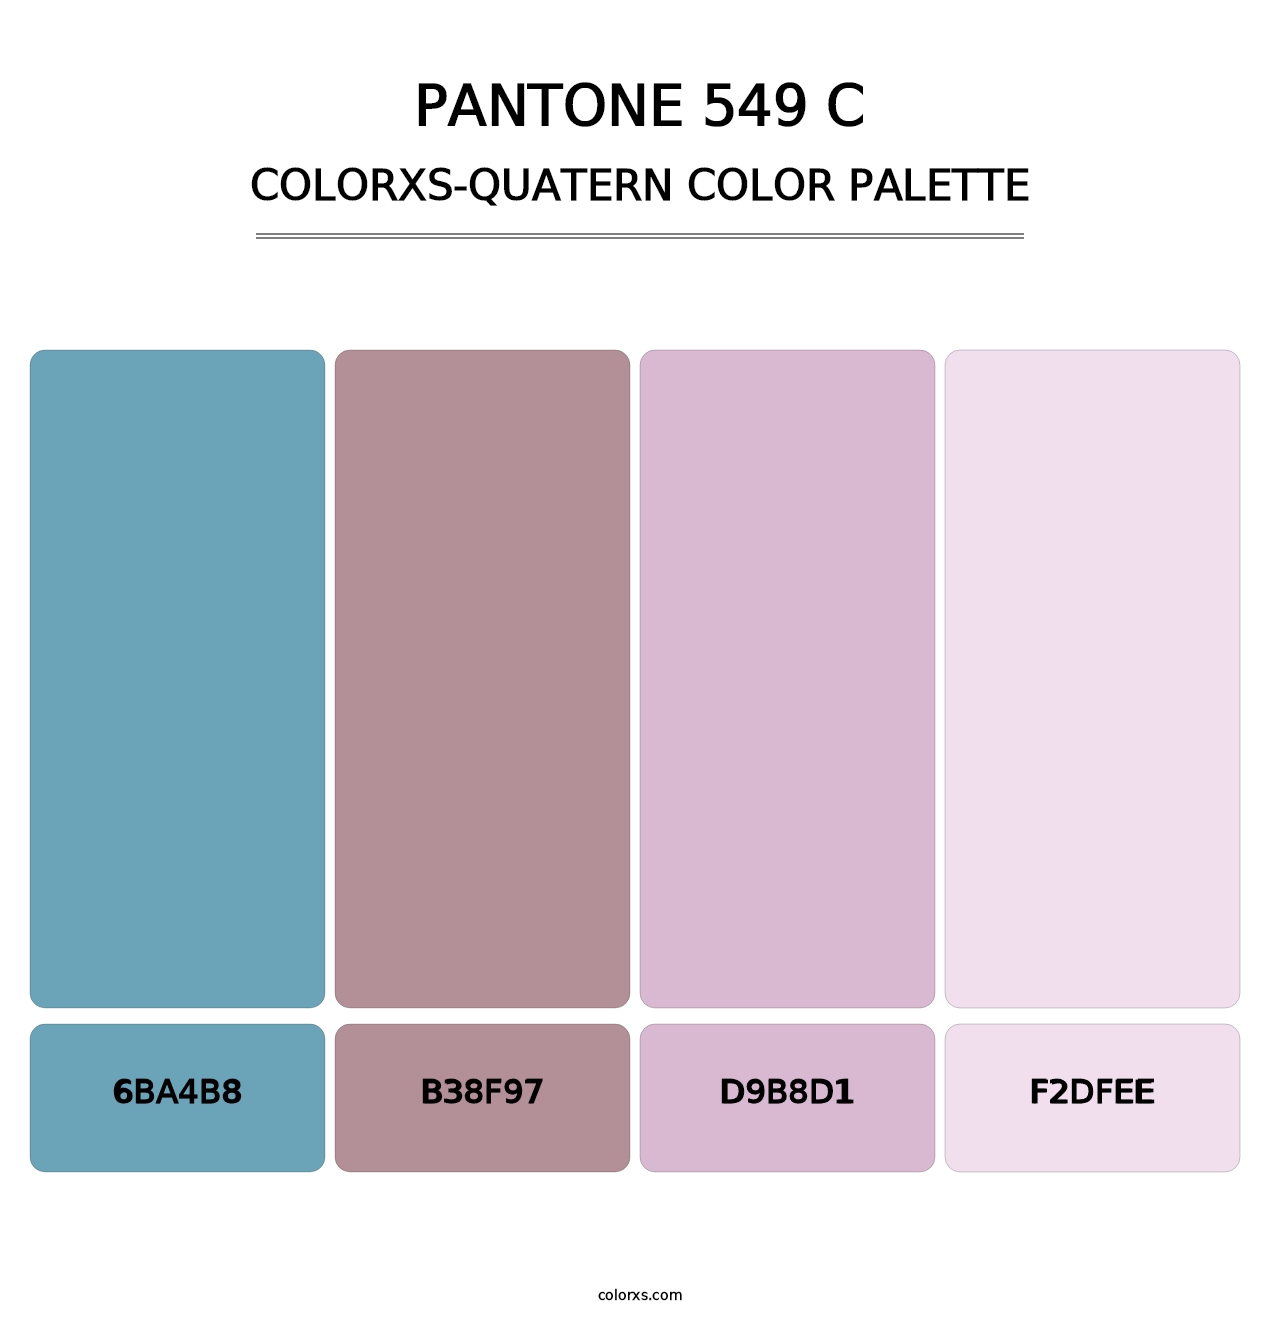 PANTONE 549 C - Colorxs Quatern Palette